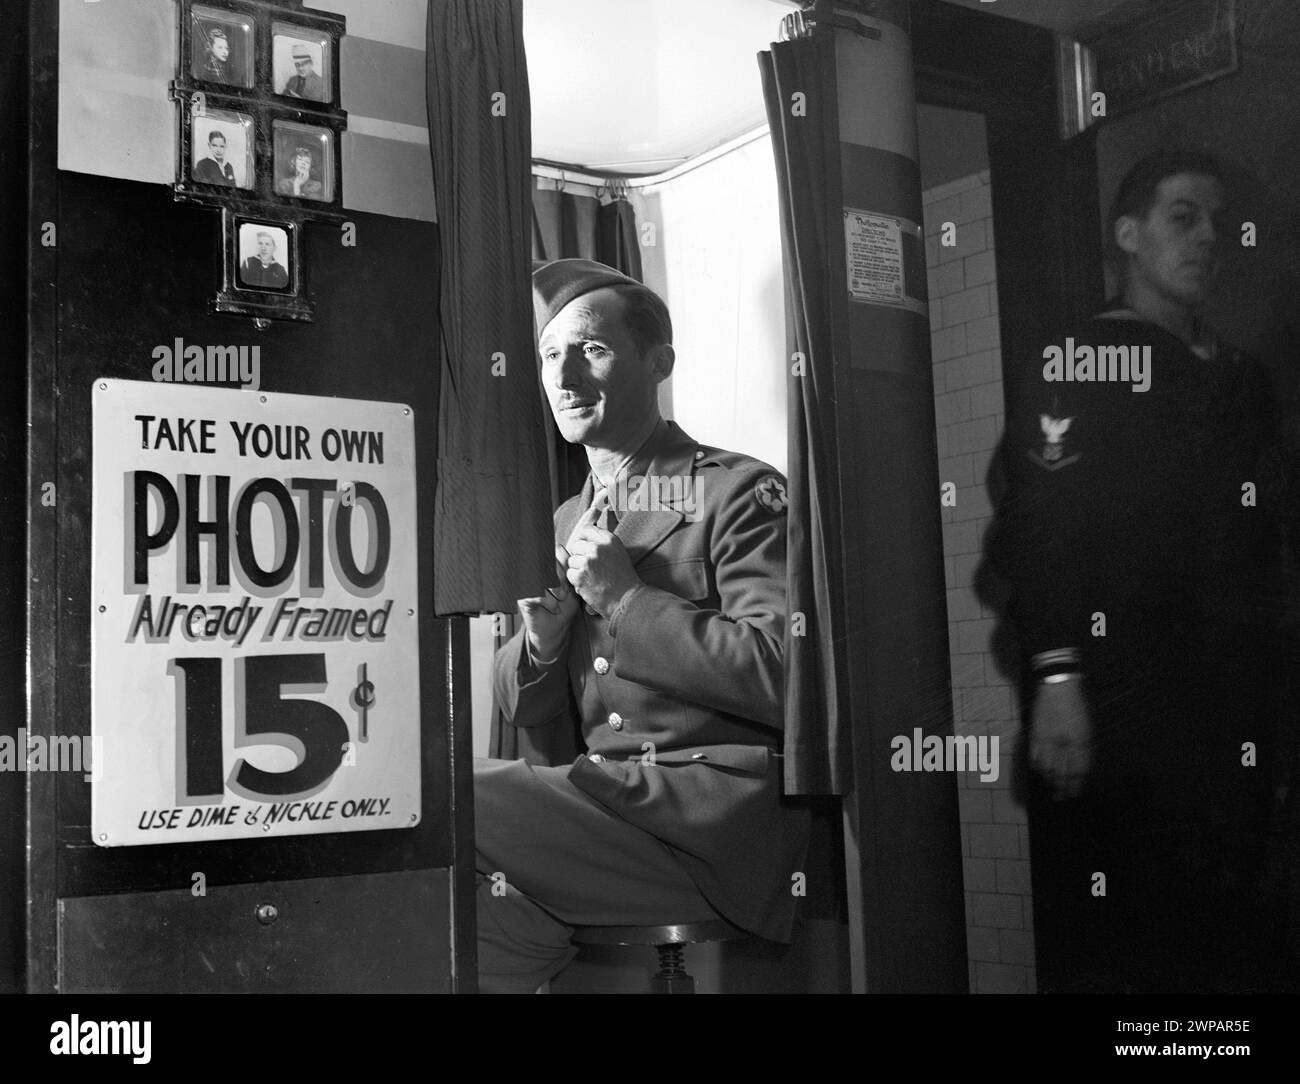 Uomo in uniforme militare seduto in una macchina per scattare foto nella hall del centro servizi delle Nazioni Unite, Washington, D.C., USA, Esther Bubley, U.S. Office of War Information, dicembre 1943 Foto Stock